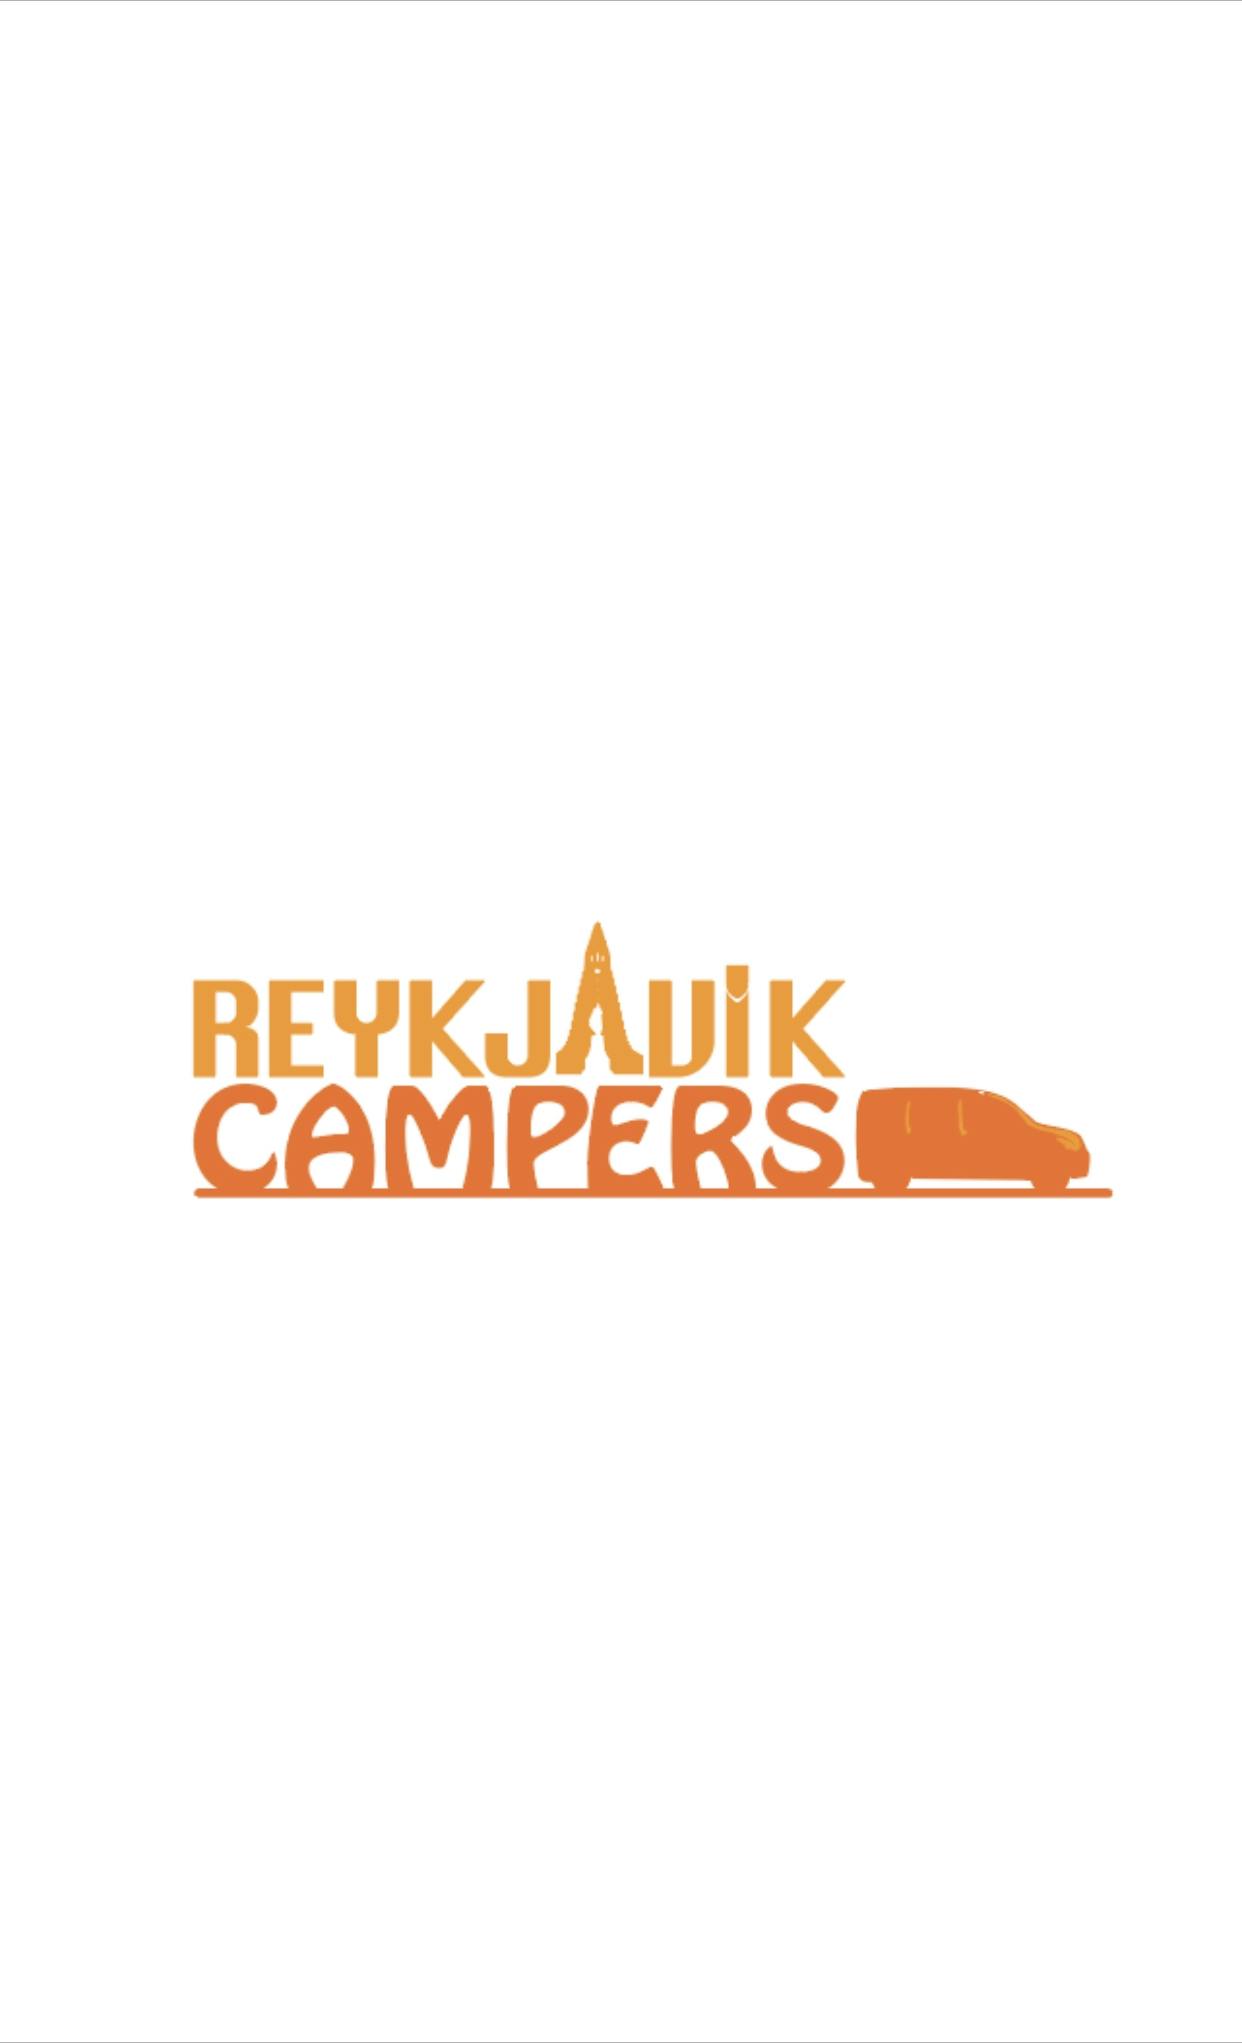 Reykjavik campers logo.jpg